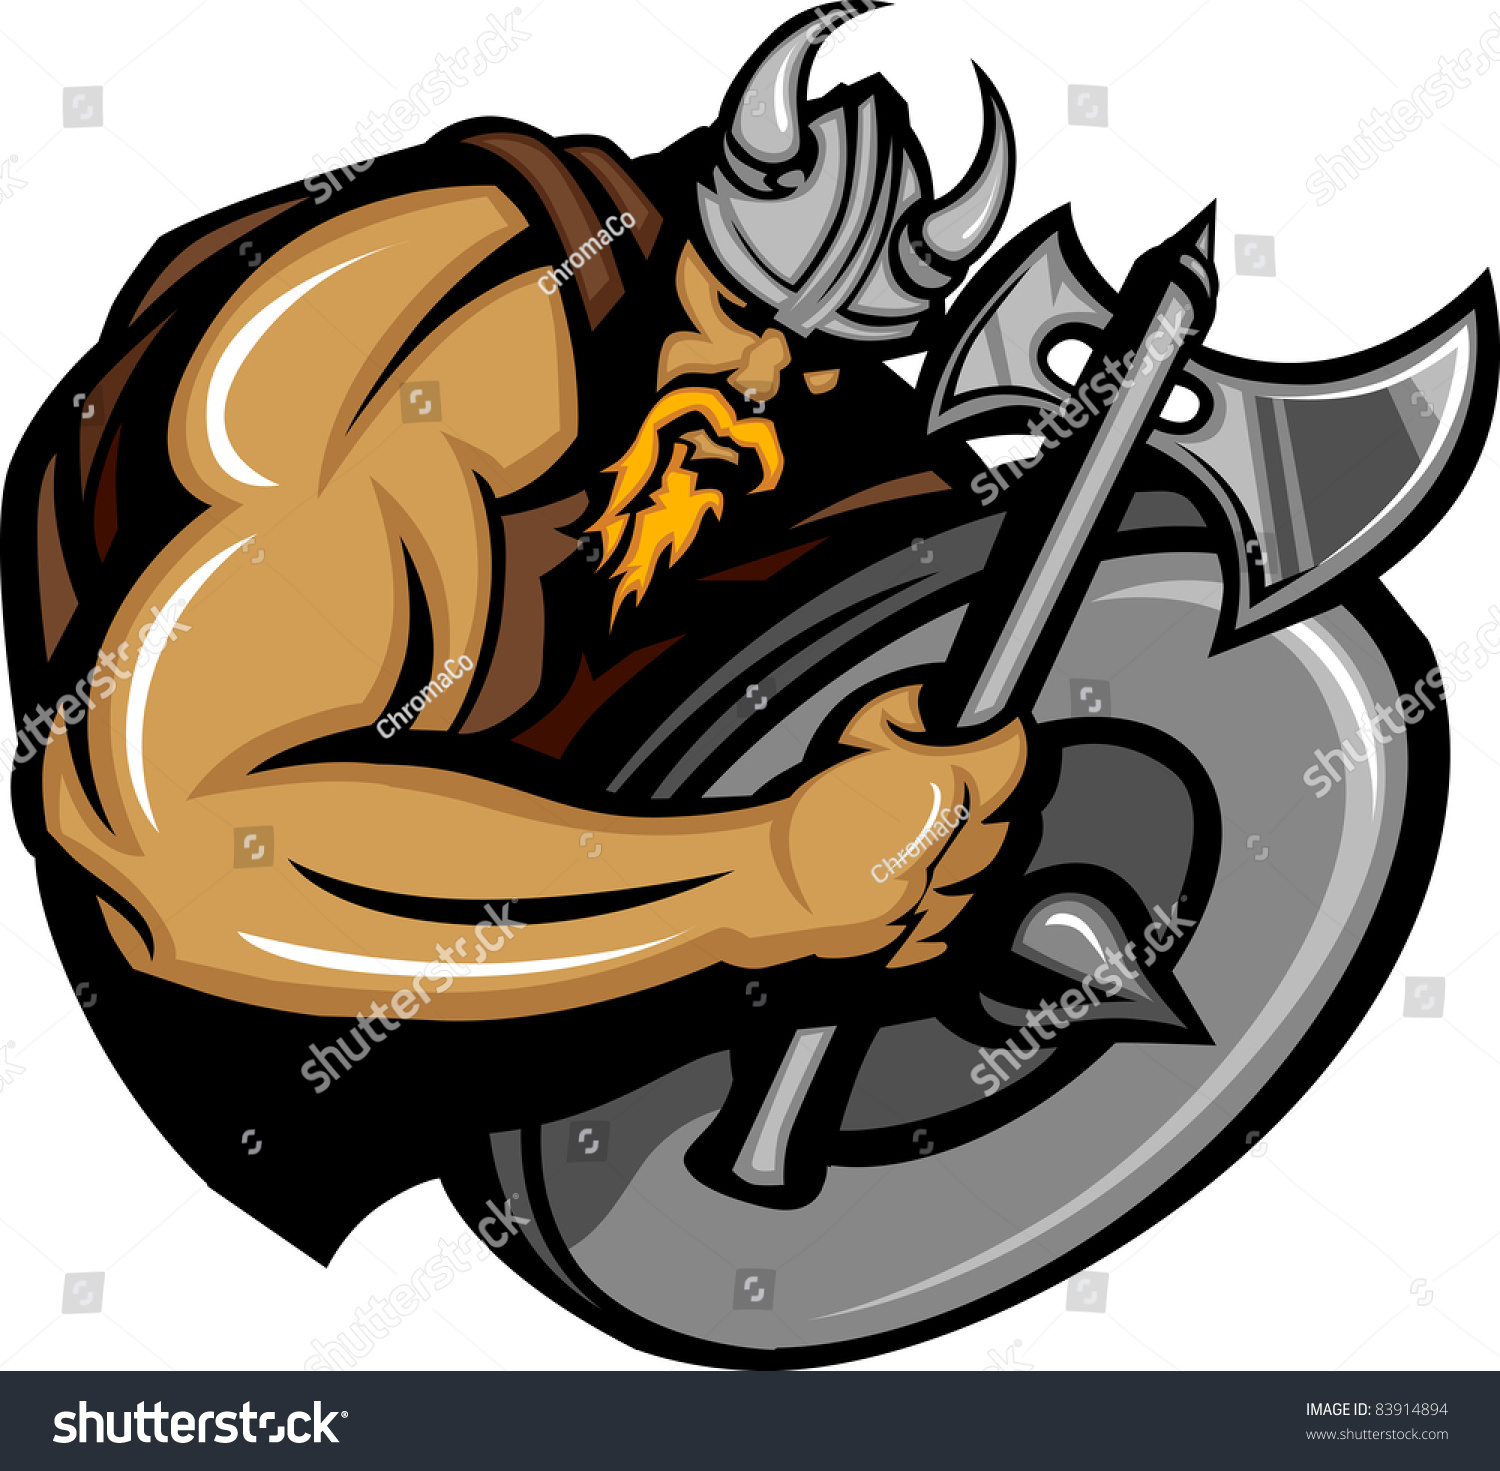 Viking Norseman Mascot Cartoon with Ax and Shield #83914894